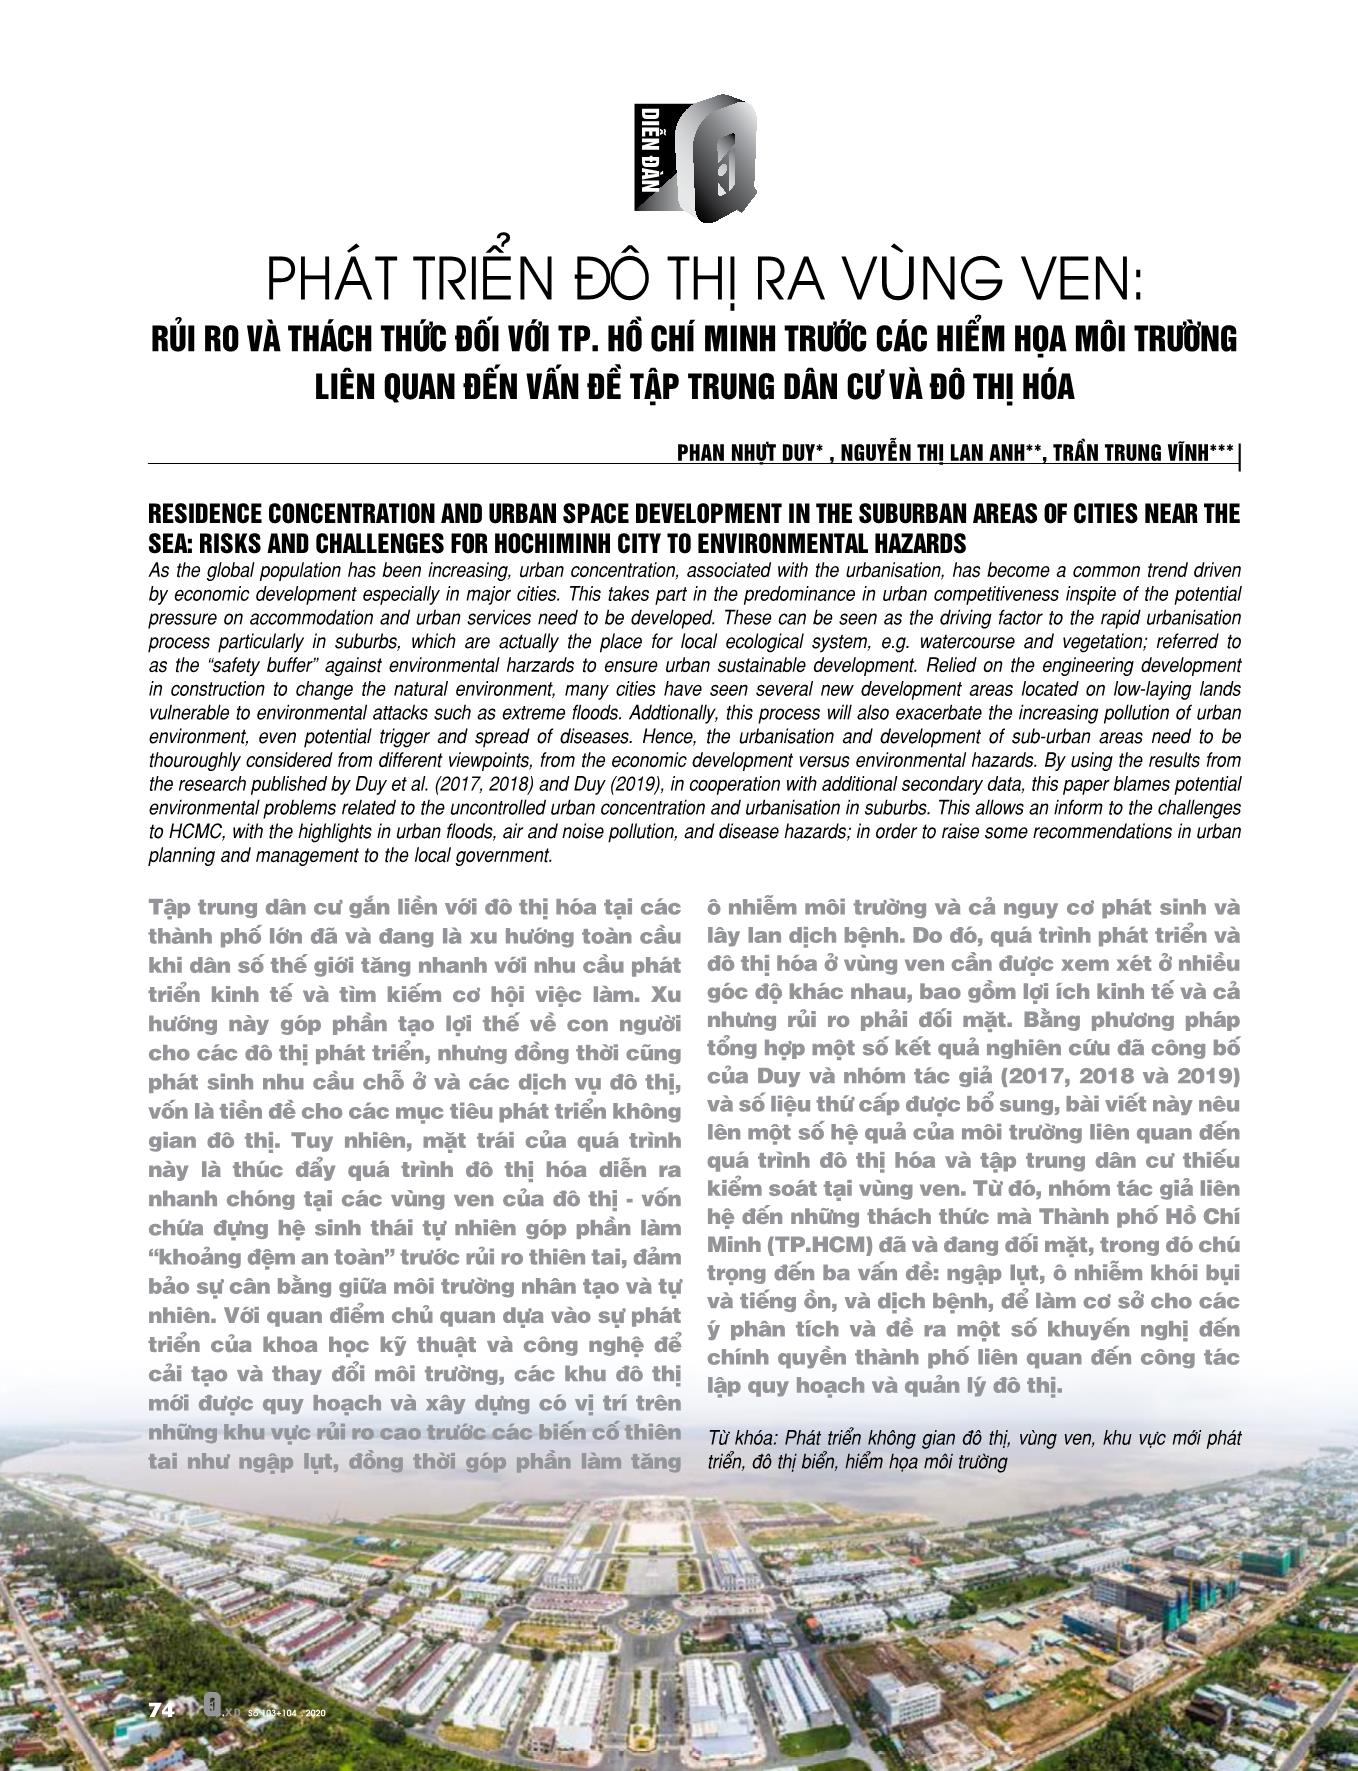 Phát triển đô thị ra vùng ven: rủi ro và thách thức đối với TP Hồ Chí Minh trước các hiểm họa môi trường trang 1